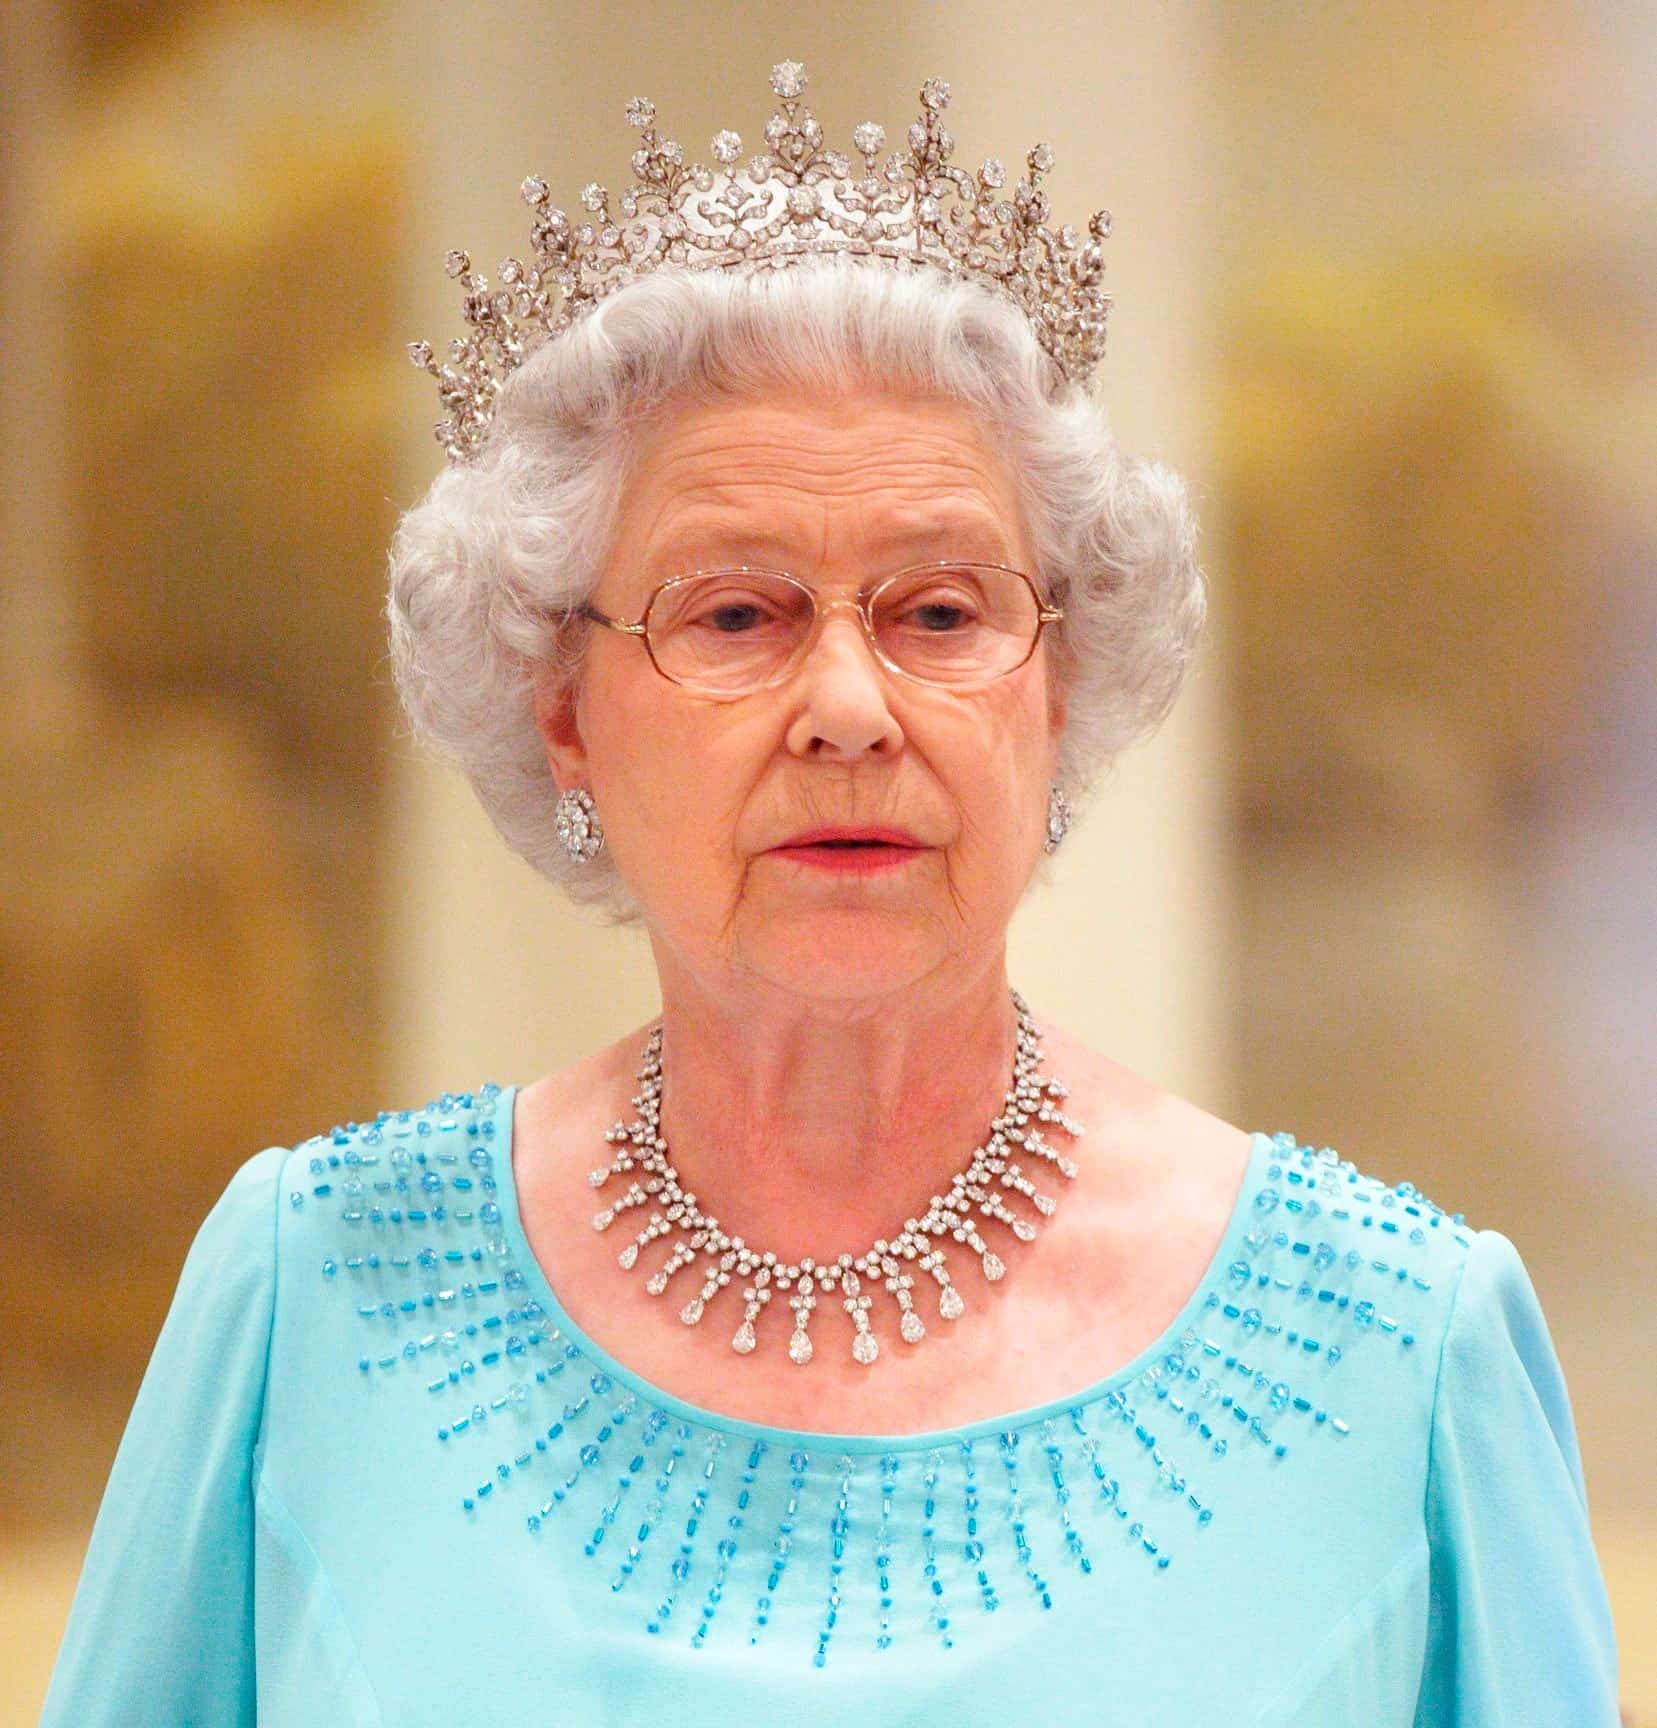 La reina Isabel II de Inglaterra al cumplir 60 años de su llegada al trono y, a sus 85 años, lejos de pensar en la jubilación, renovó su compromiso de servicio al Reino Unido con el pueblo británico.